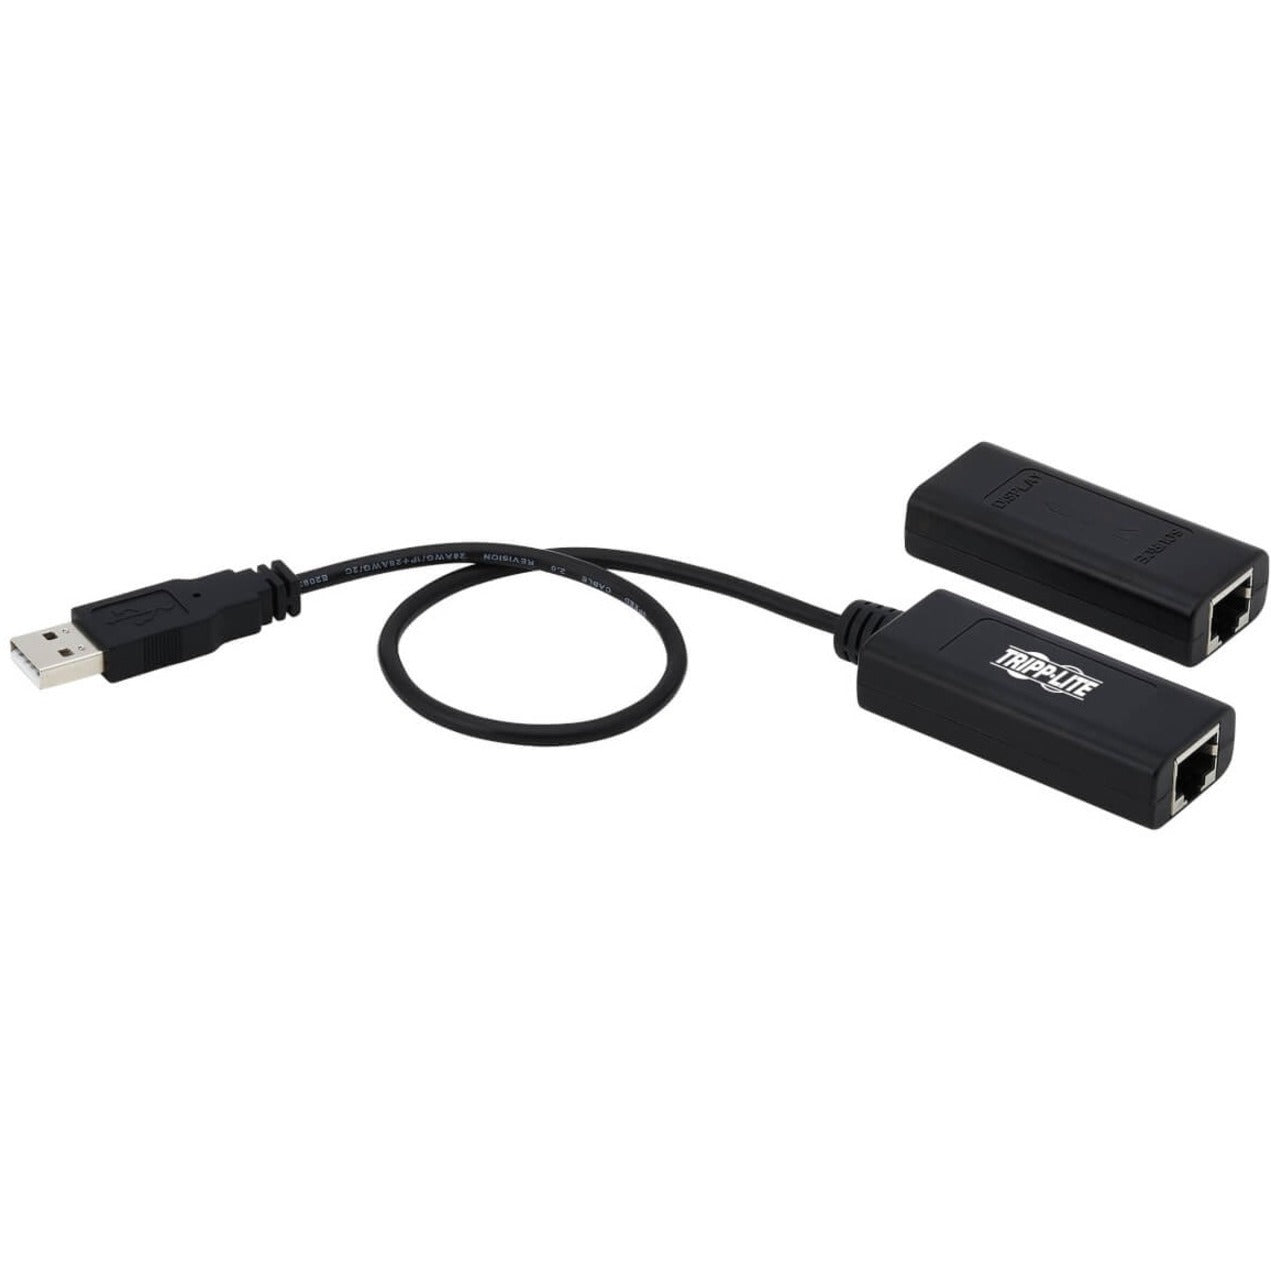 Tripp Lite B203-101-POC Video Extender Transmitter/Receiver, Full HD 1080p, 164 ft Range, USB CAT5/CAT6 Extender Kit